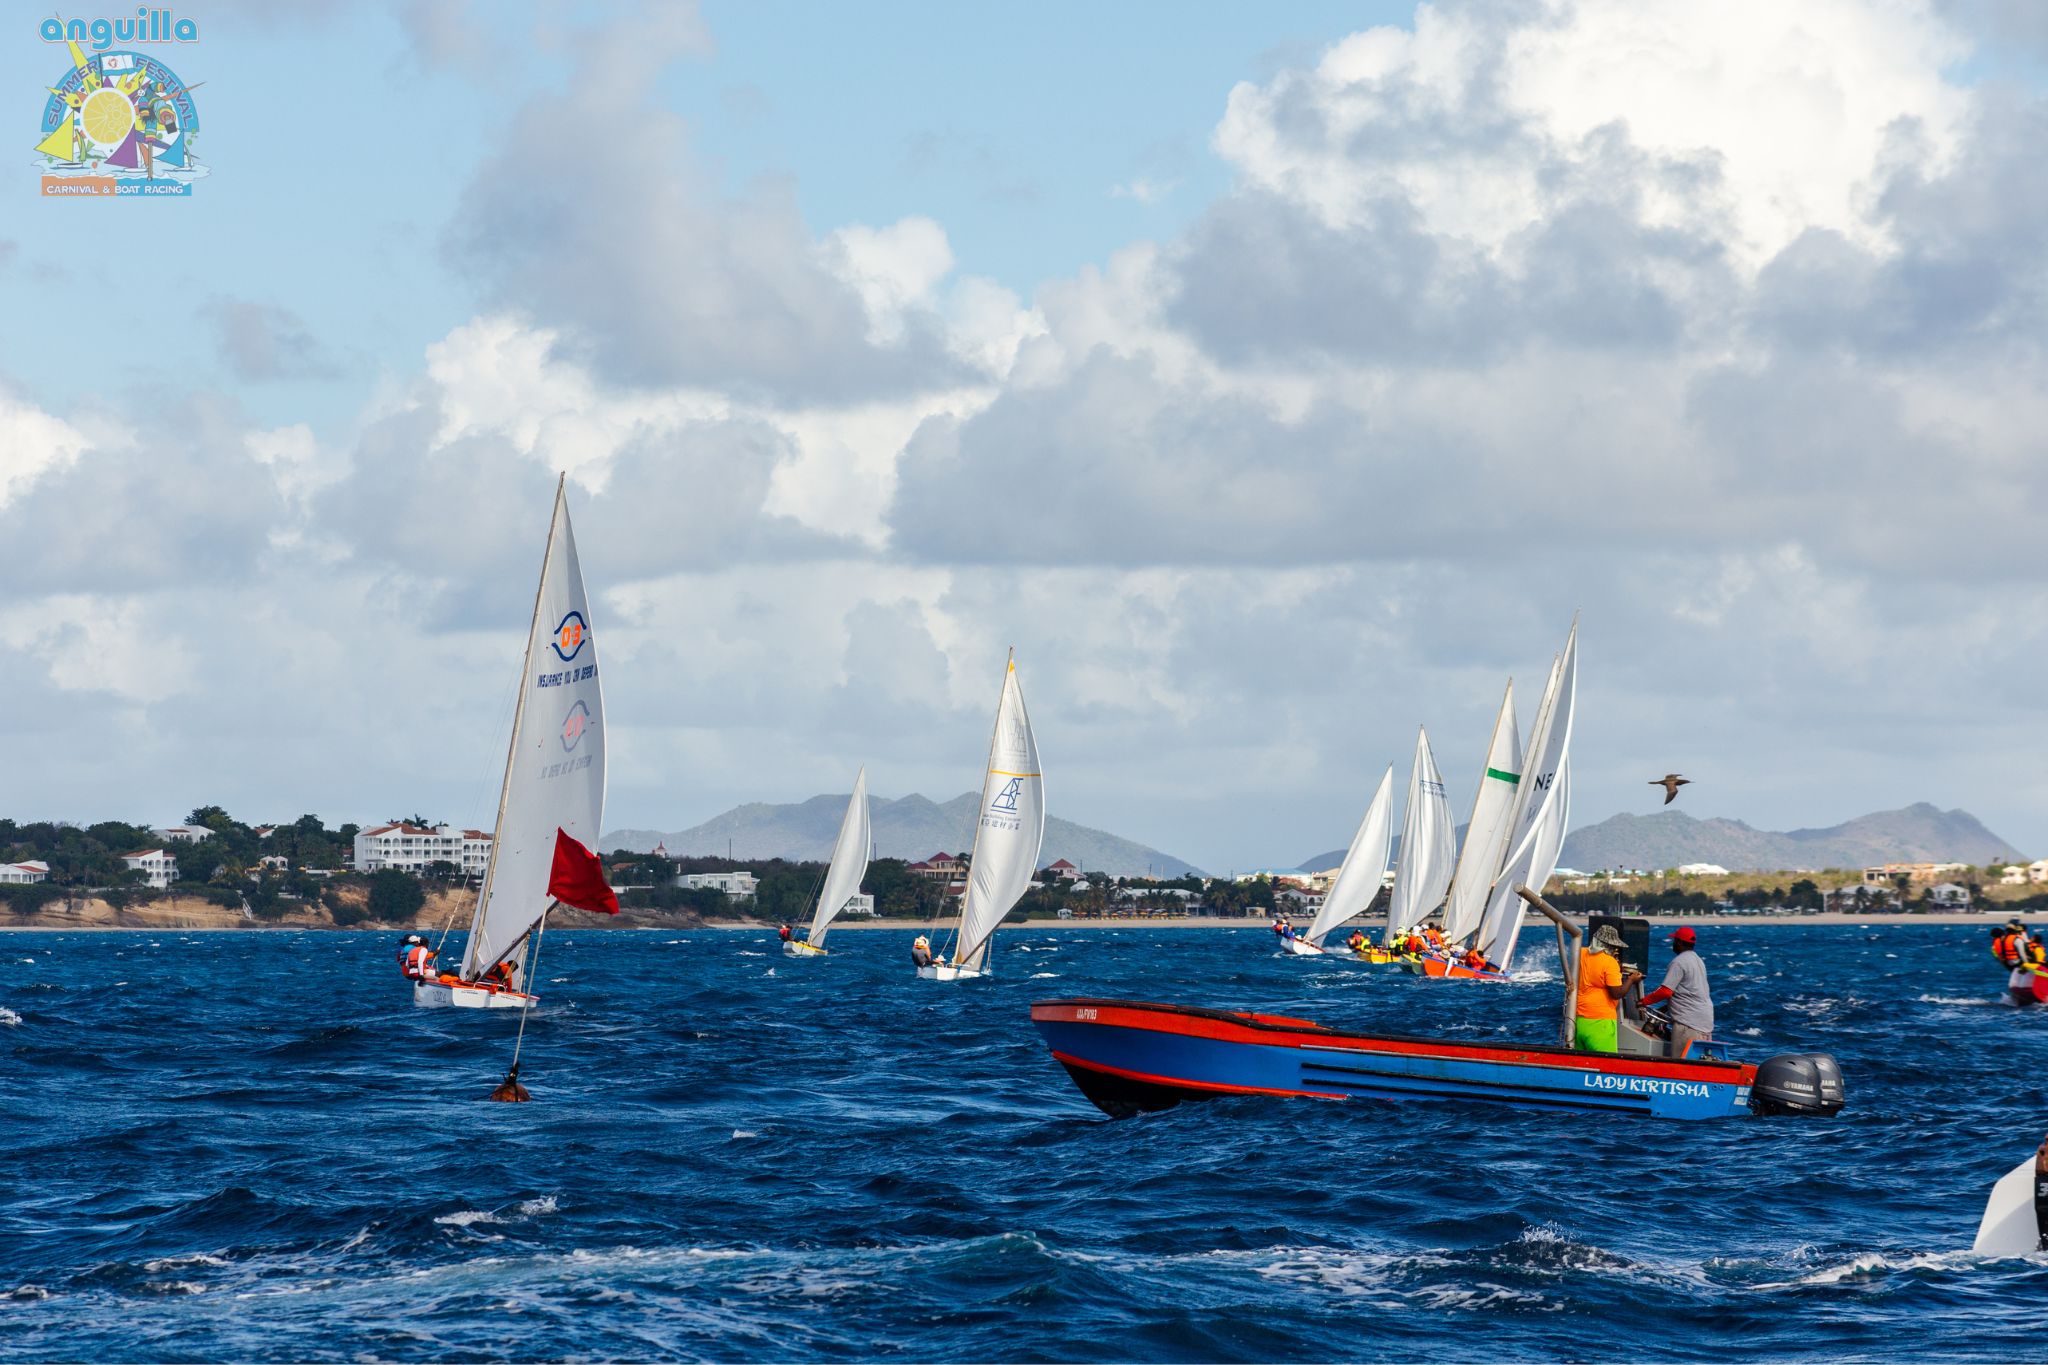 Anguilla Boat Racing